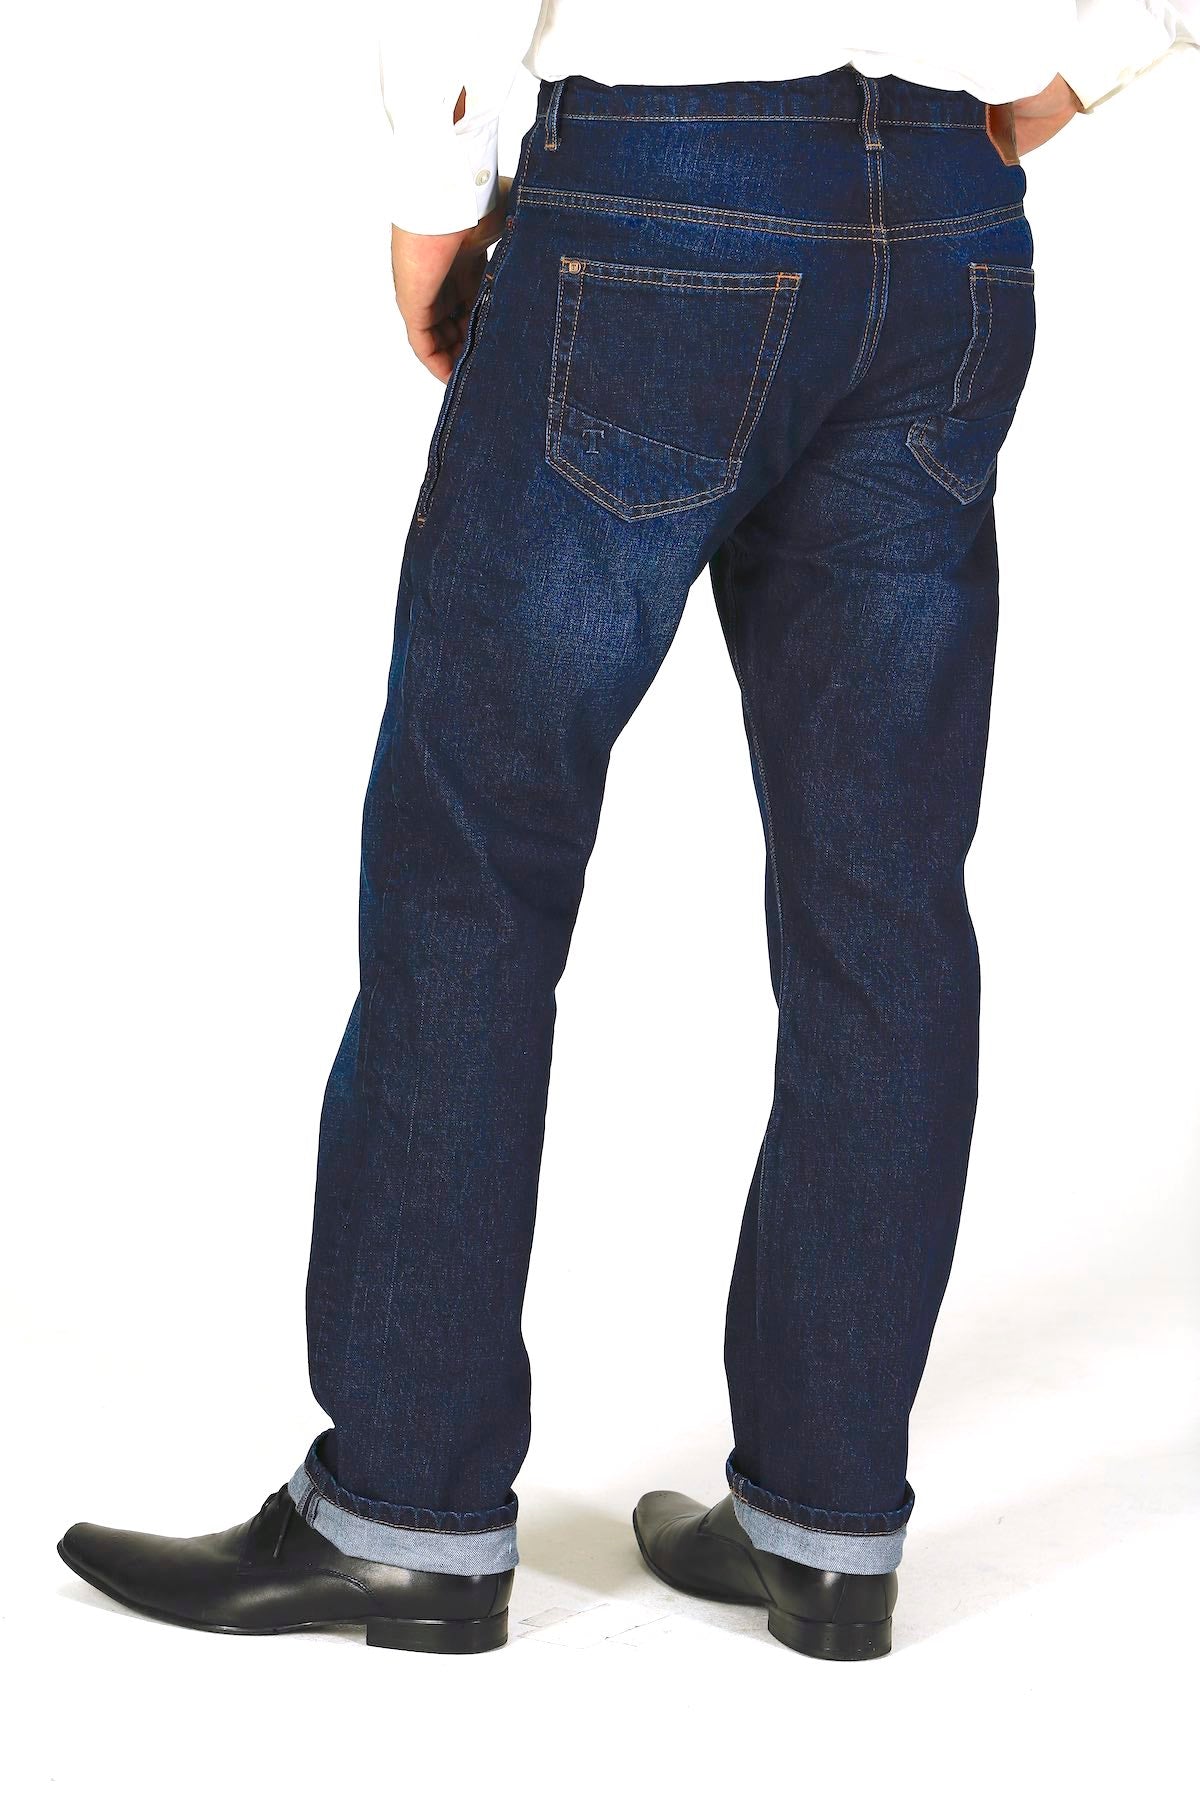 Straight Fit - Dark Indigo Herren-Jeans (Kollektion 2020)